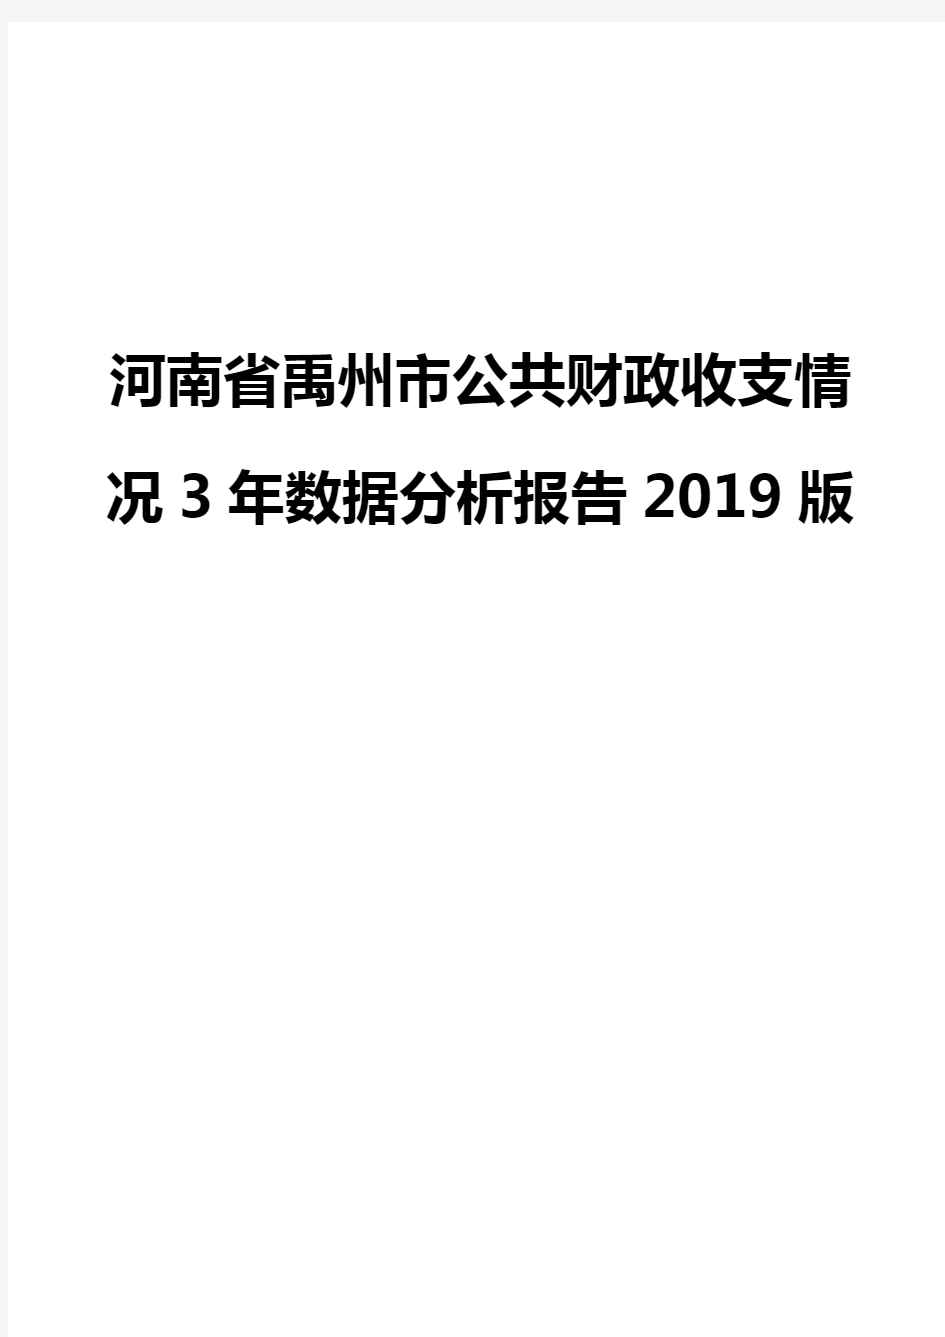 河南省禹州市公共财政收支情况3年数据分析报告2019版